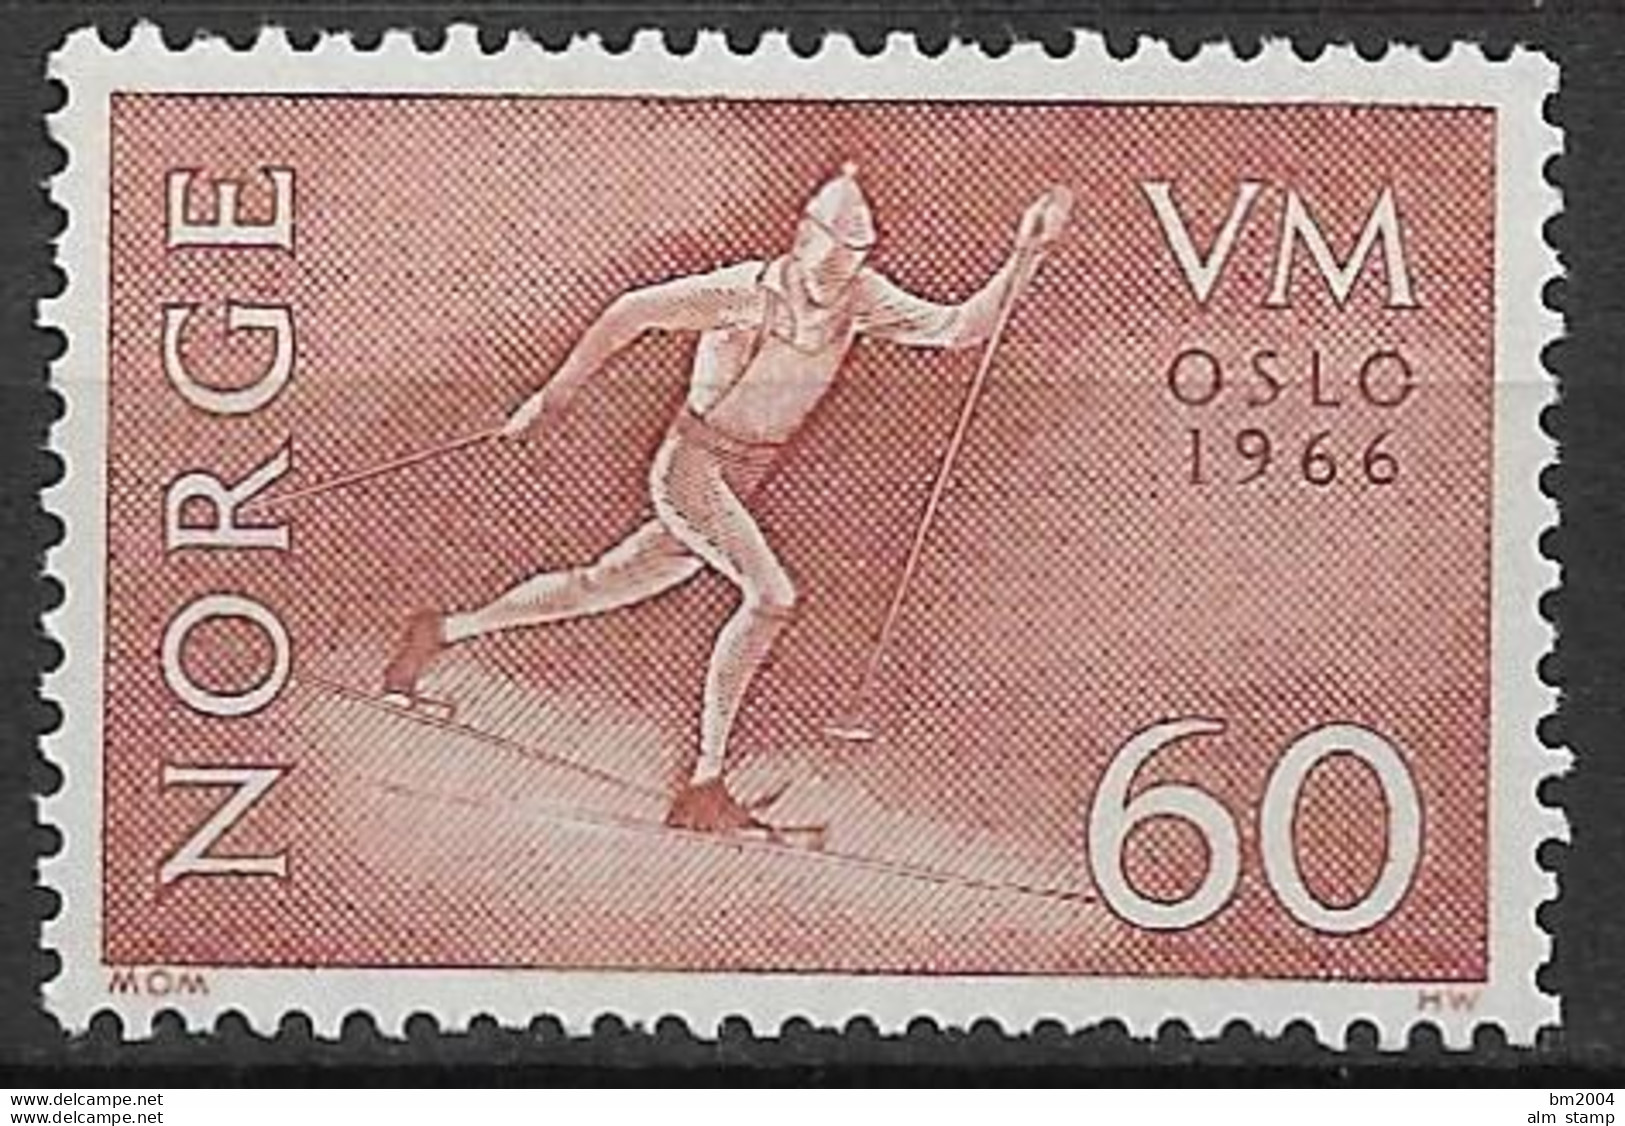 1966 Norwegen Mi. 539  **MNH   Skilangläufer - Unused Stamps